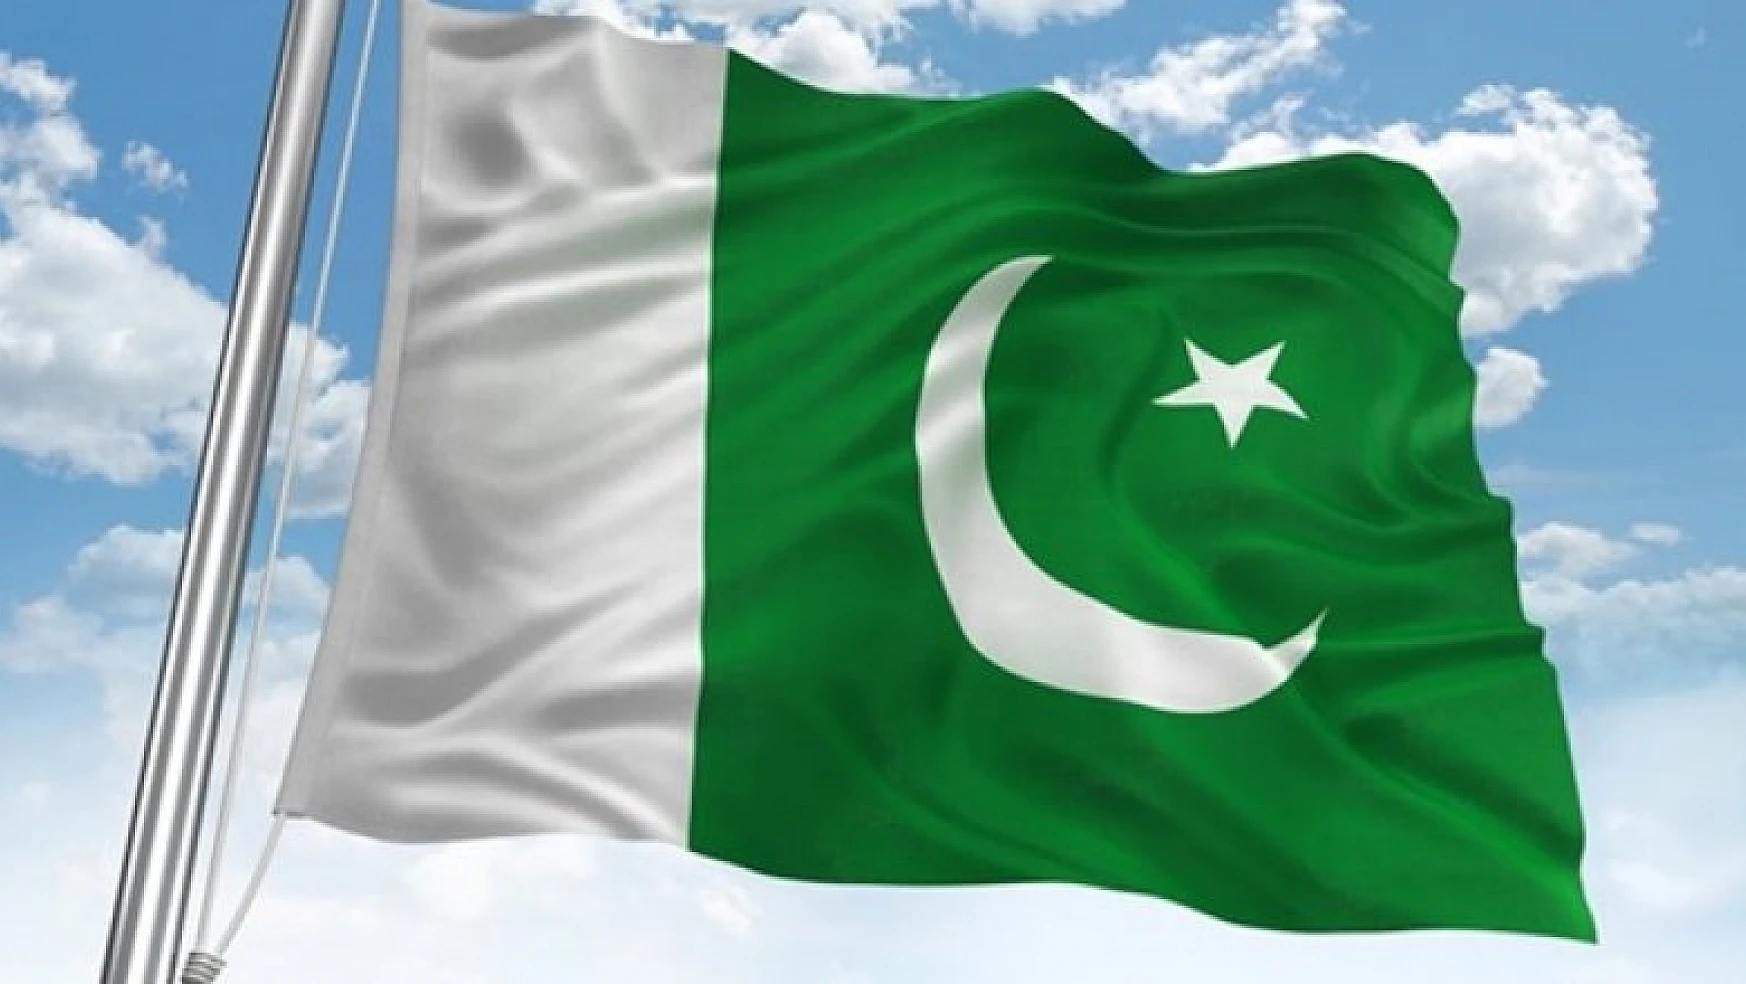 Pakistan'a karşı ateşkesi resmen bozdular